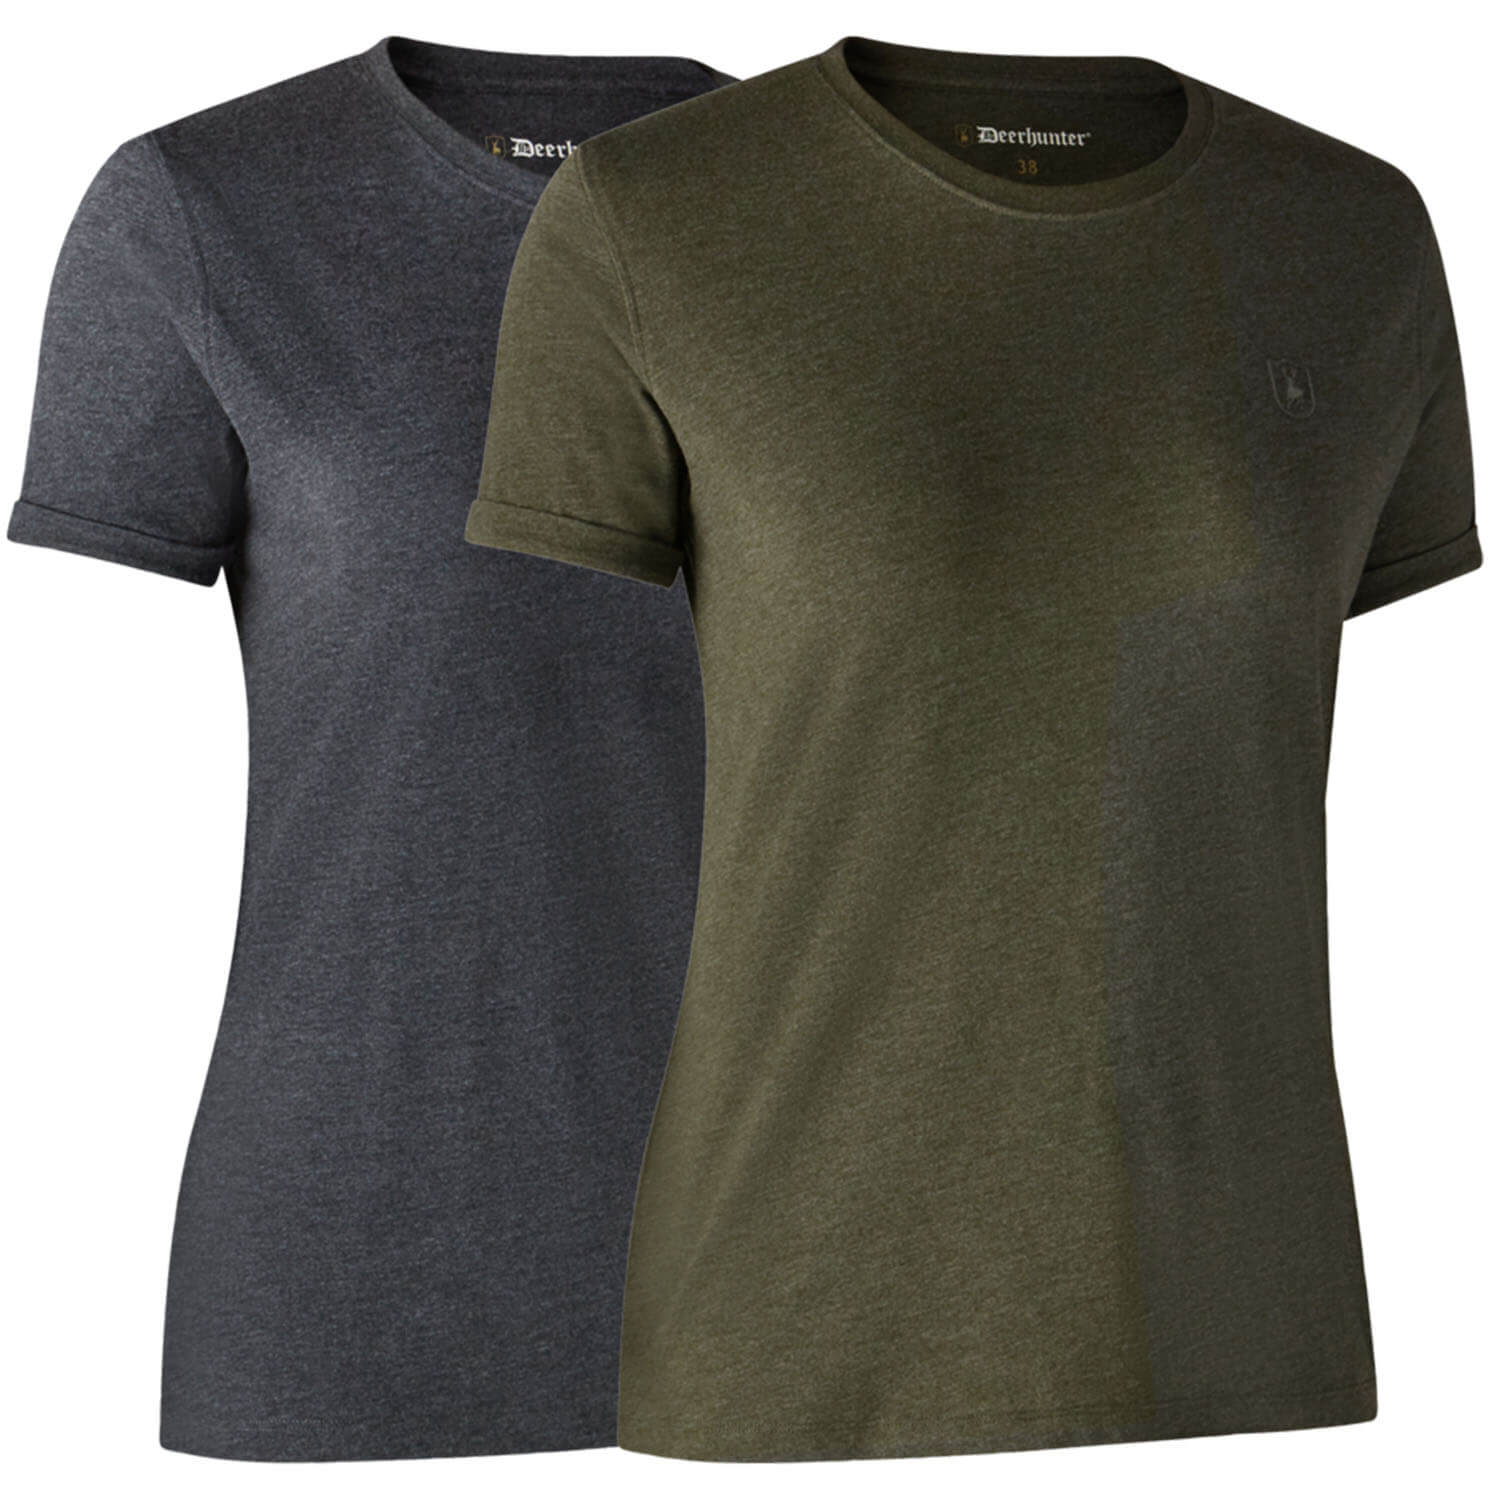  Deerhunter Dames T-shirt basic 2-pack (groen/grijs) - Blouses & shirts